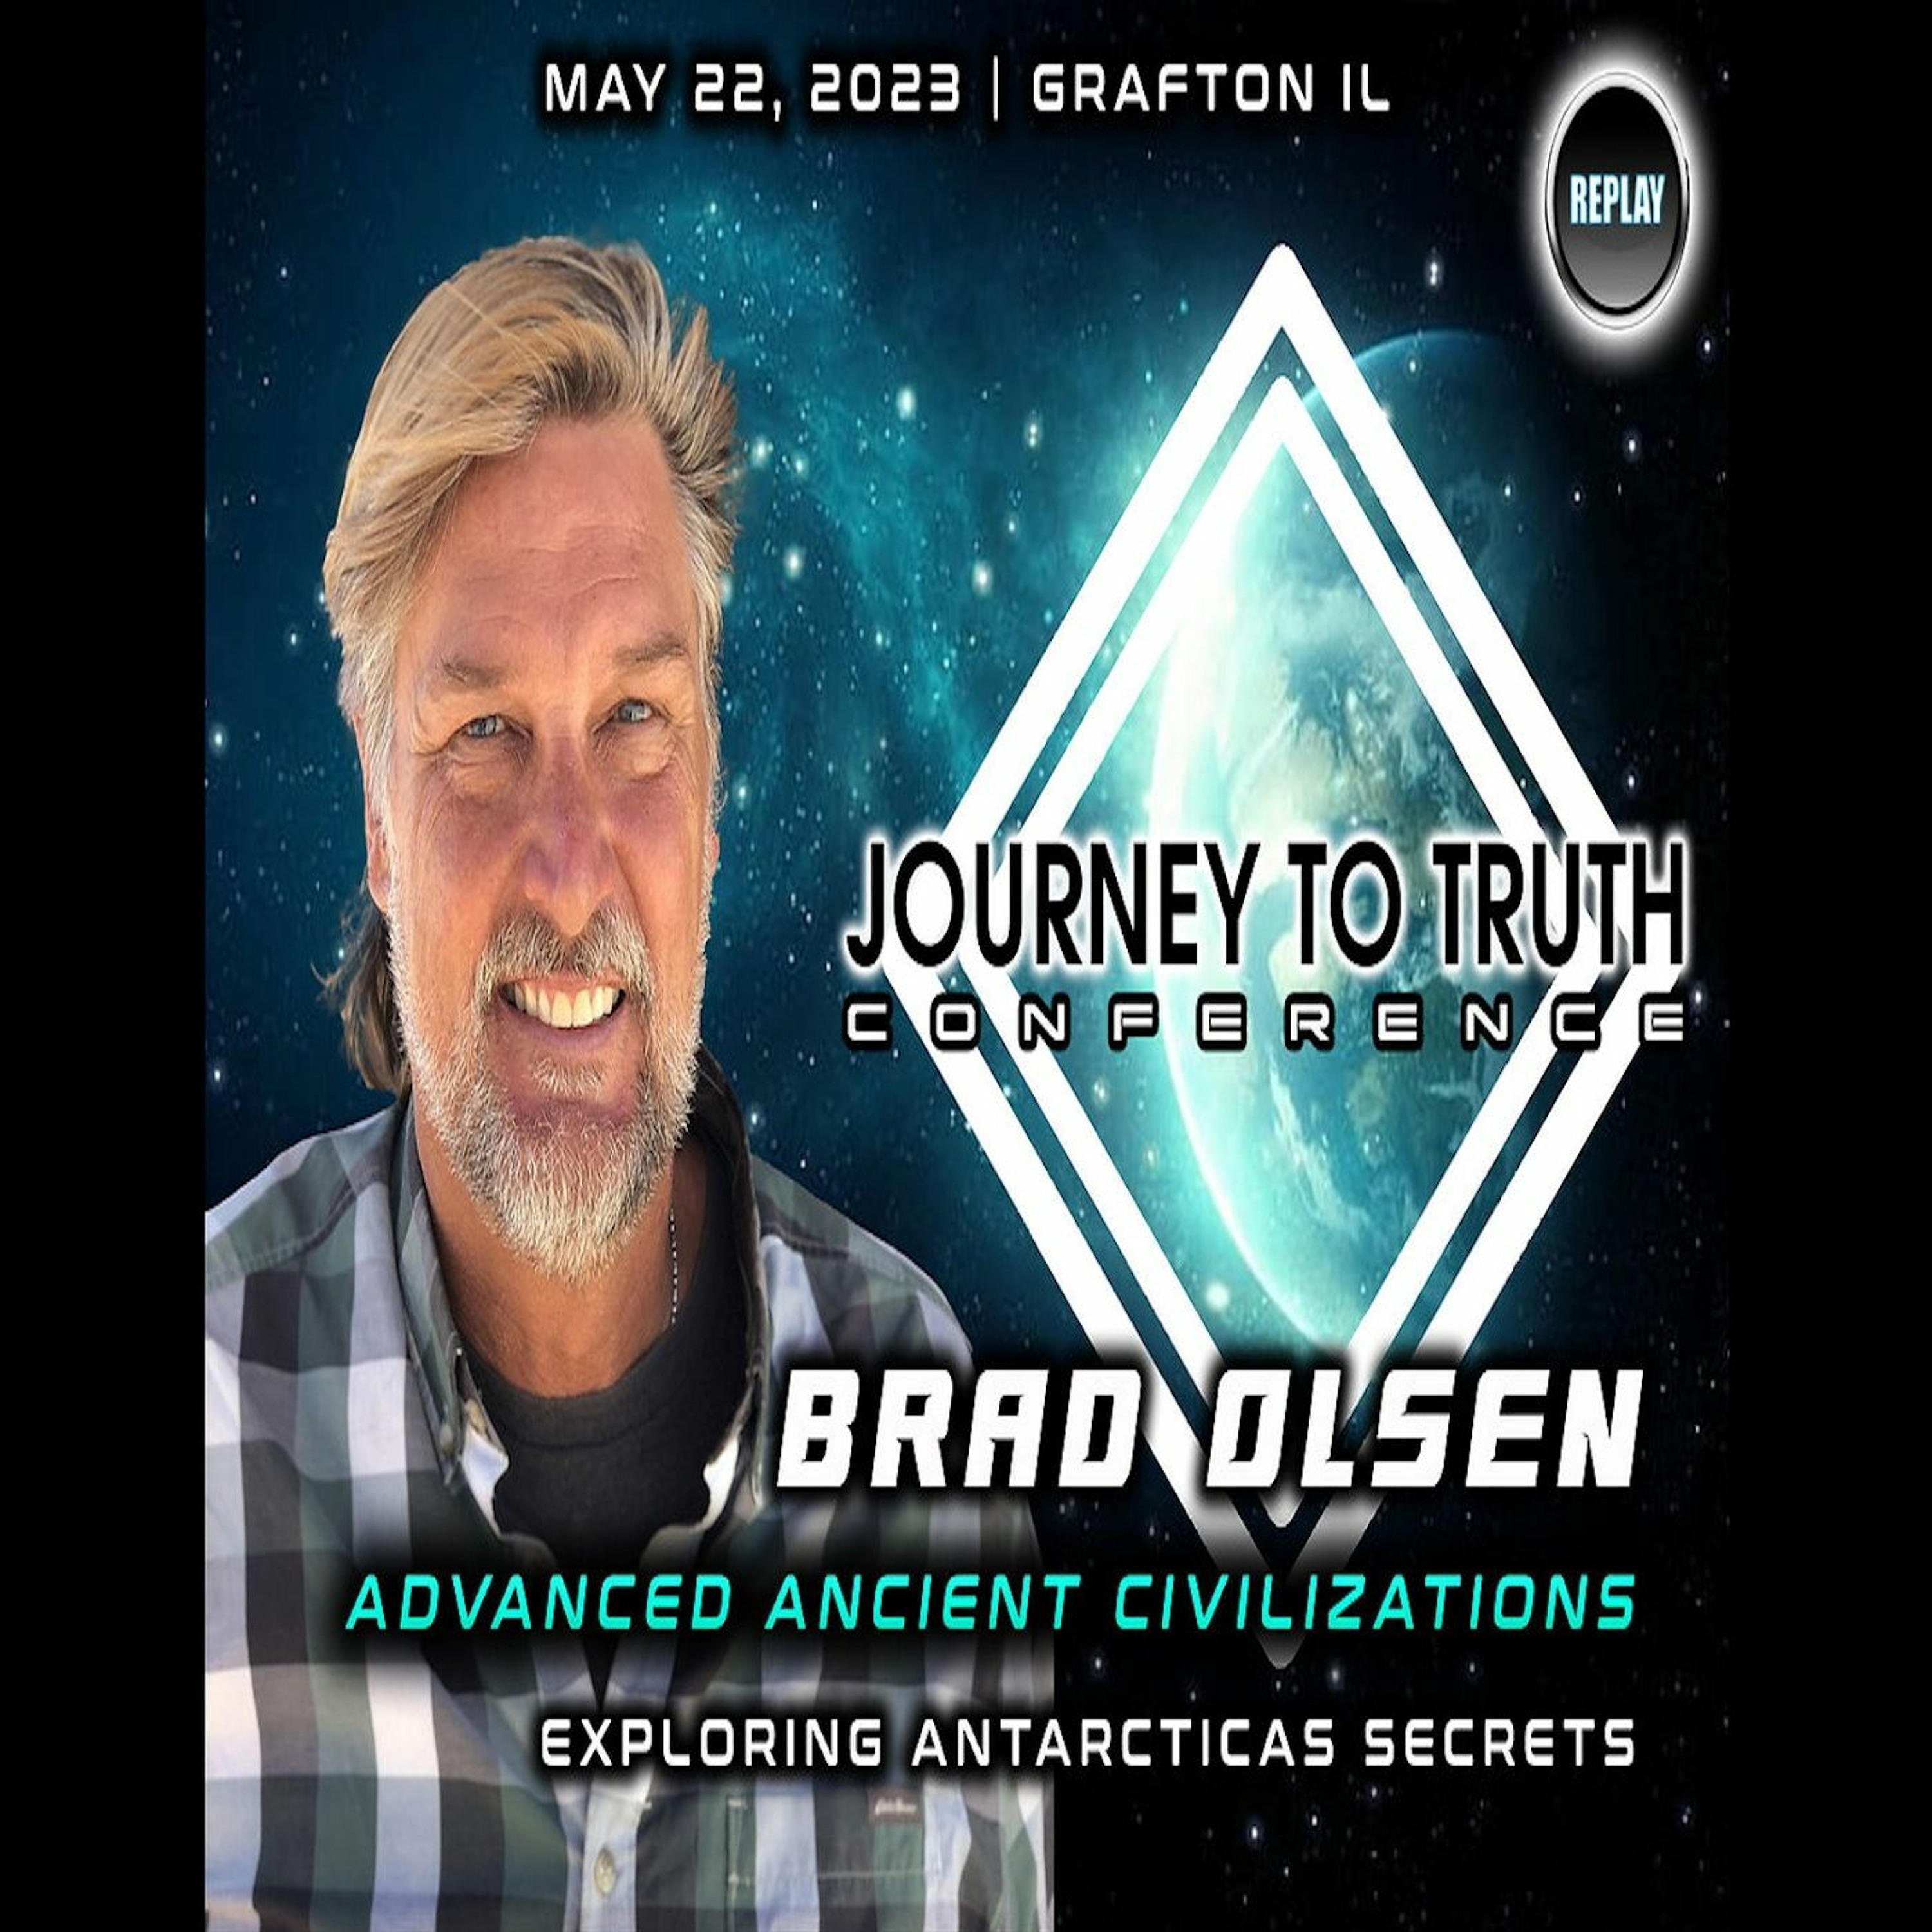 BRAD OLSEN | ANCIENT ADVANCED CIVILIZATIONS - EXPLORING ANTARCTICA'S SECRETS | J2T CON 2023